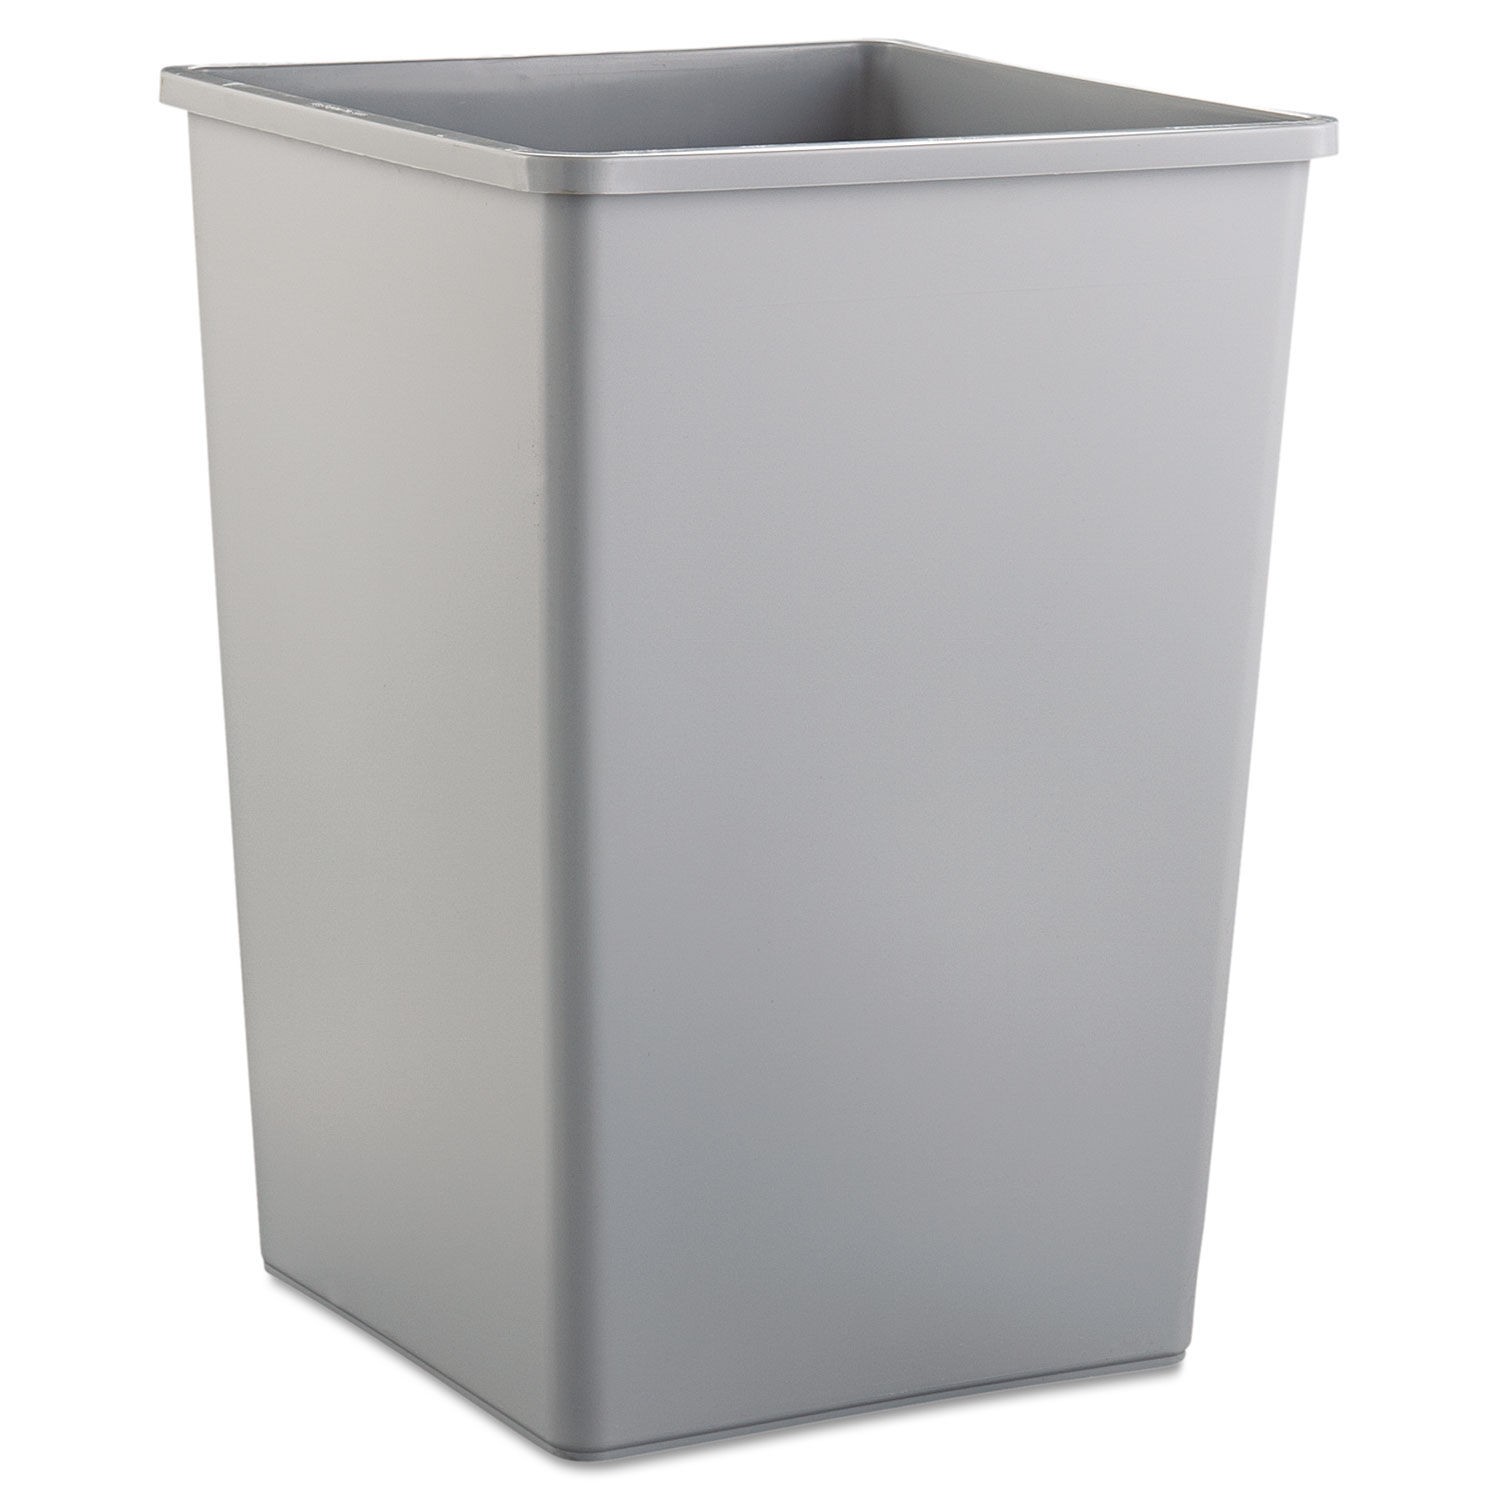 Untouchable Square Trash Can, 35 Gallon, Gray